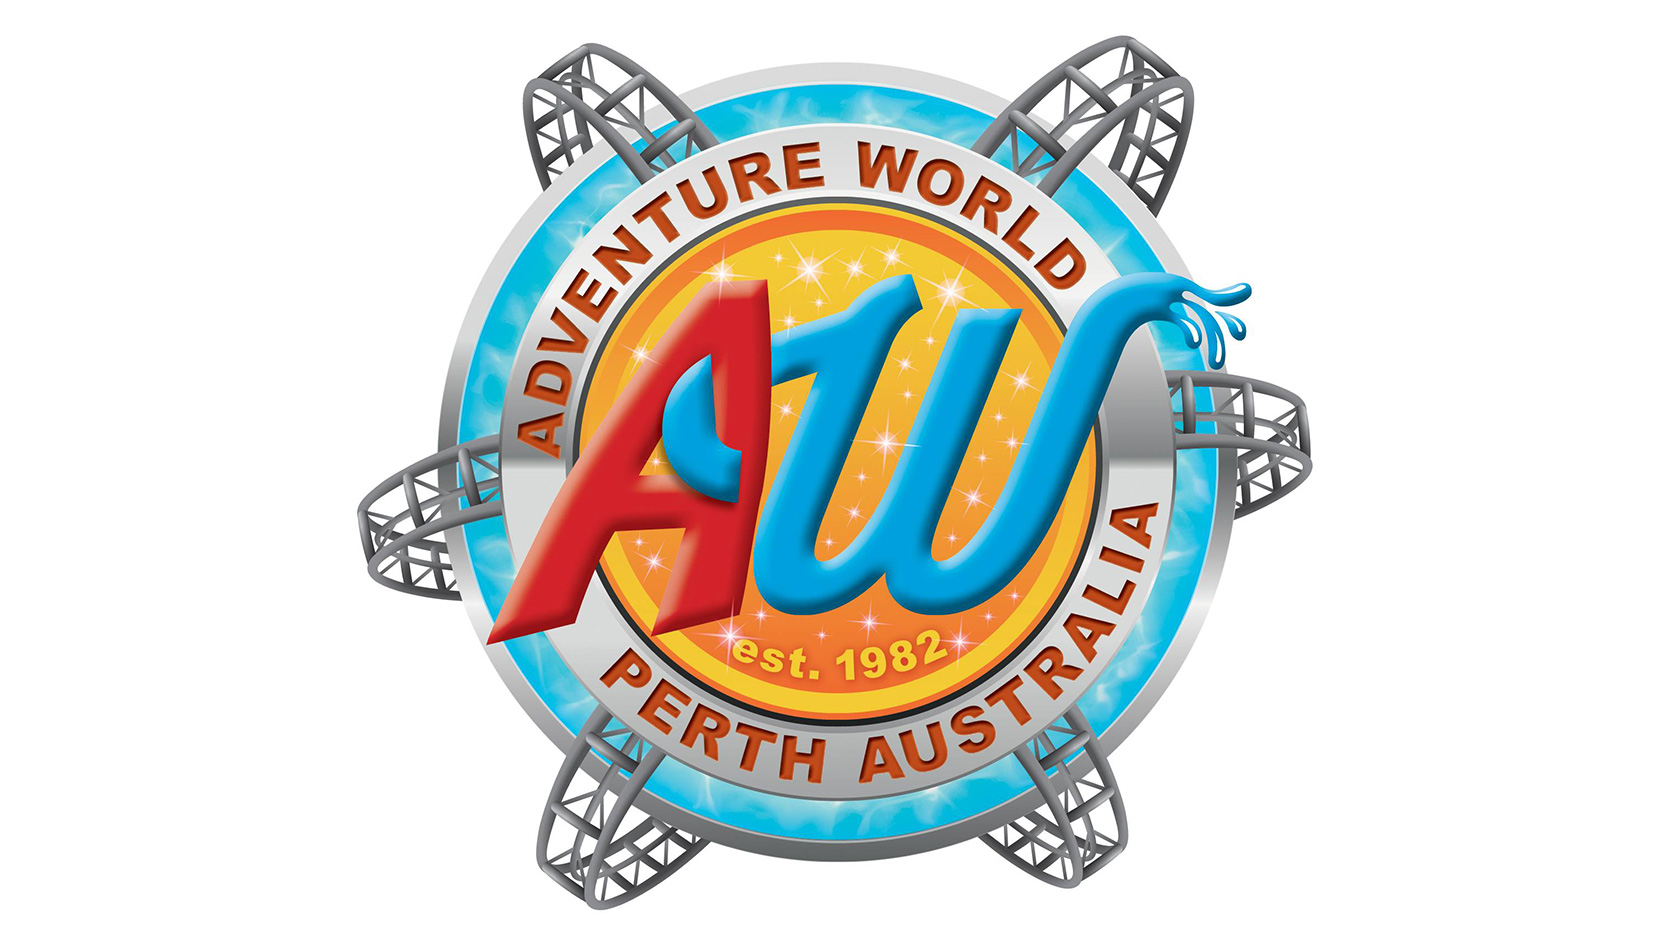 Adventure World in Perth, Australia - Logo